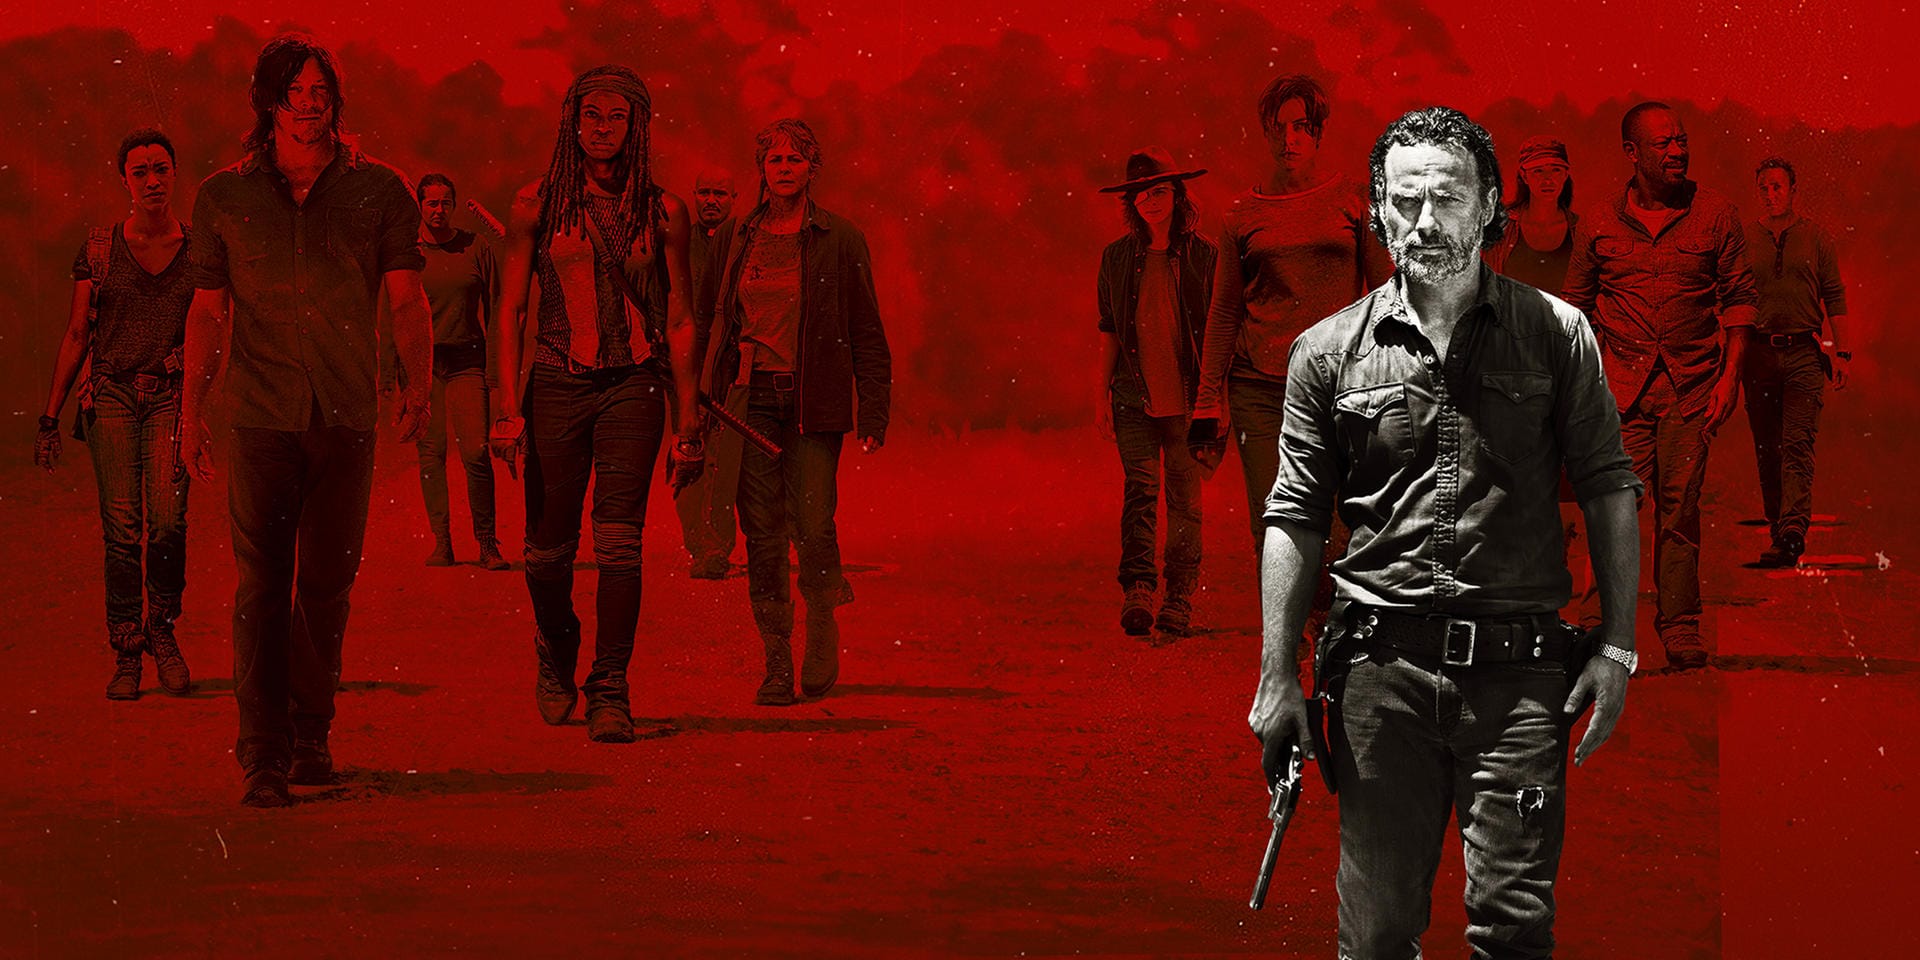 An den Zombies von "The Walking Dead" kommt auch 2017 keiner vorbei. Die aktuelle Staffel läuft bei Fox immer montags ab 21.00 Uhr, keine 24h nach der US-Premiere. Staffel 8 wird voraussichtlich im Herbst 2017 starten.